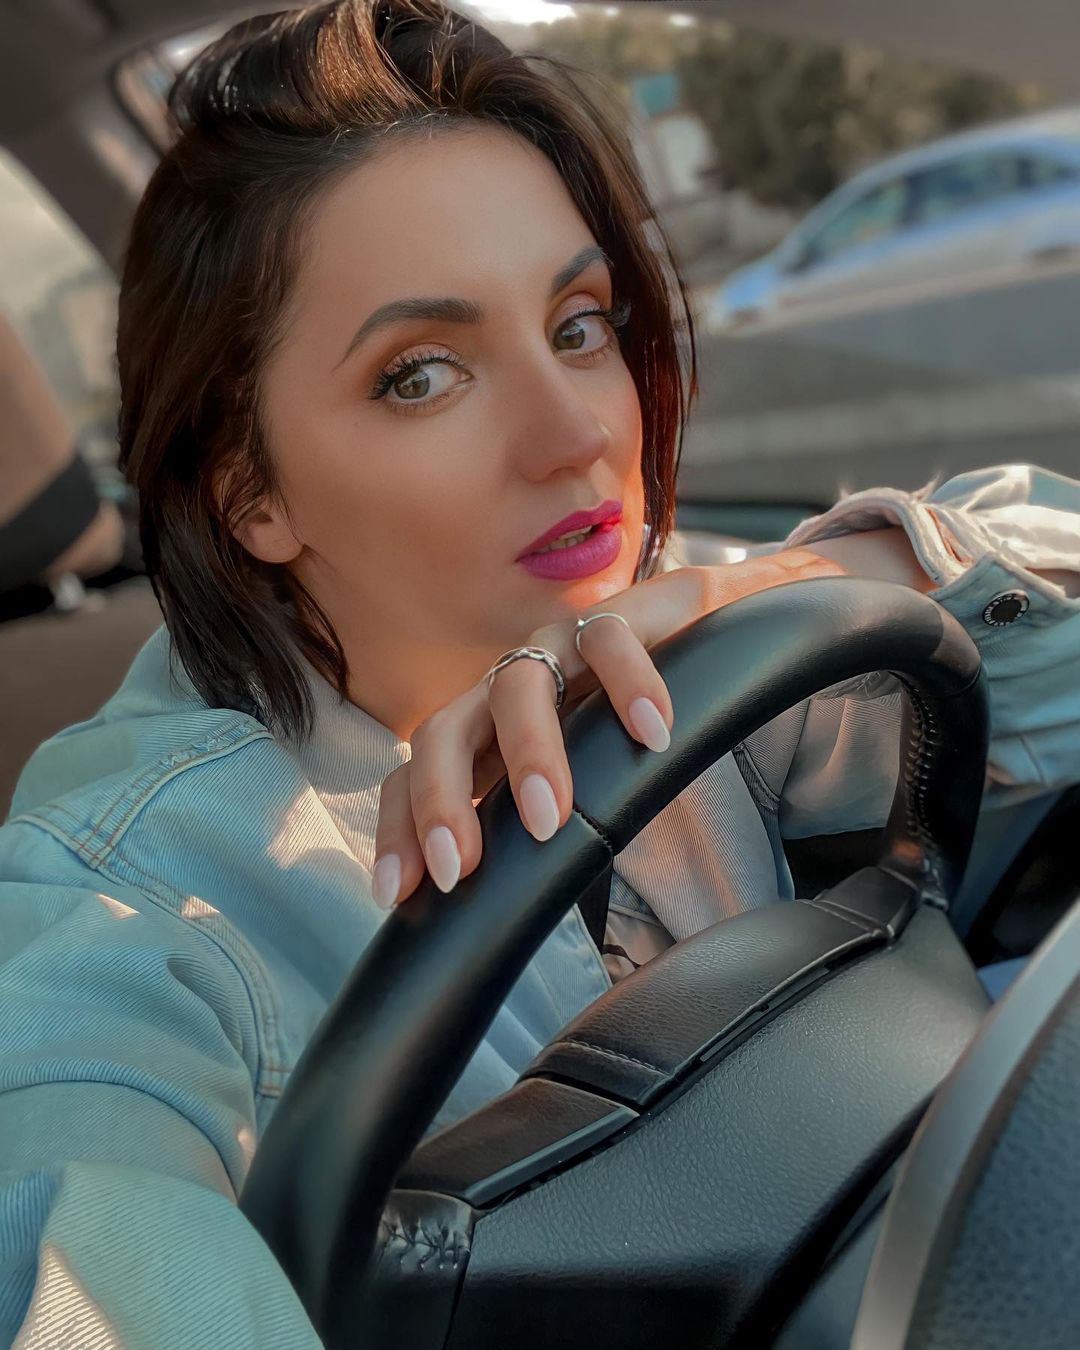 Оля Цибульская заплатила две тысячи гривен, чтобы забрать автомобиль со штрафплощадки. Фото: Instagram.com/cybulskaya/